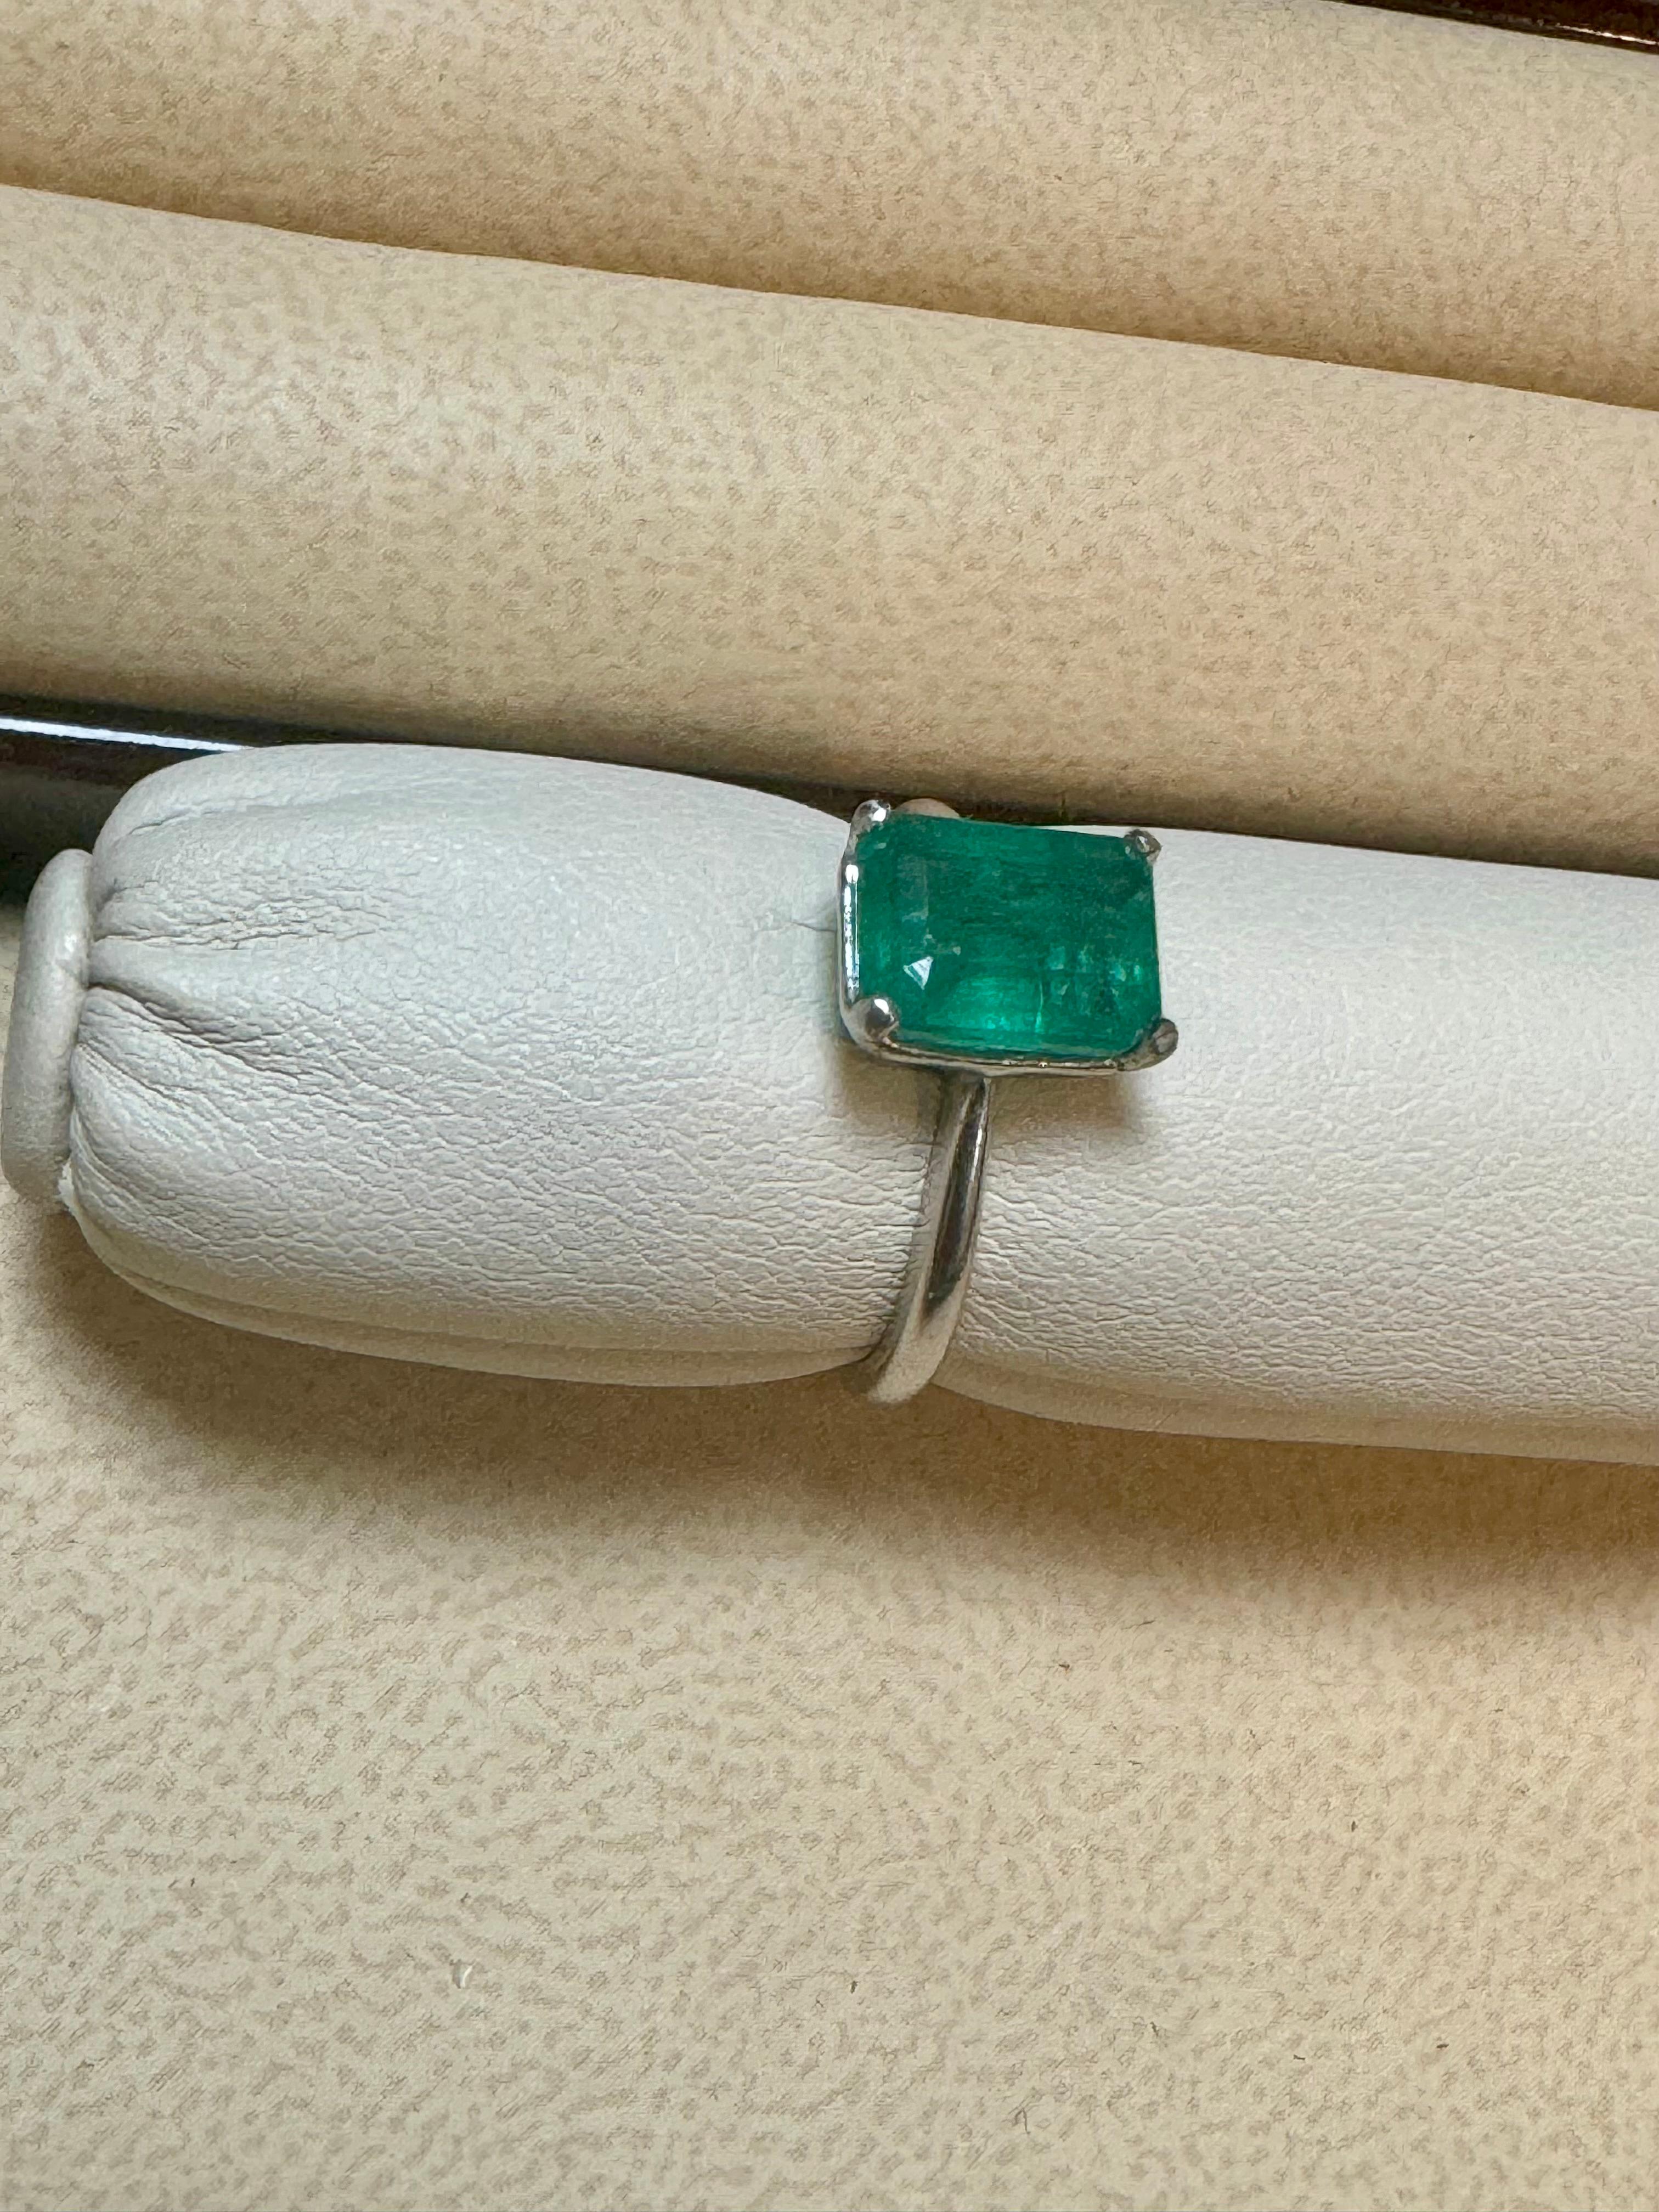 Natural 2.2 Carat Emerald Cut Zambian Emerald Ring in Platinum, Estate, Size 5.5 For Sale 2